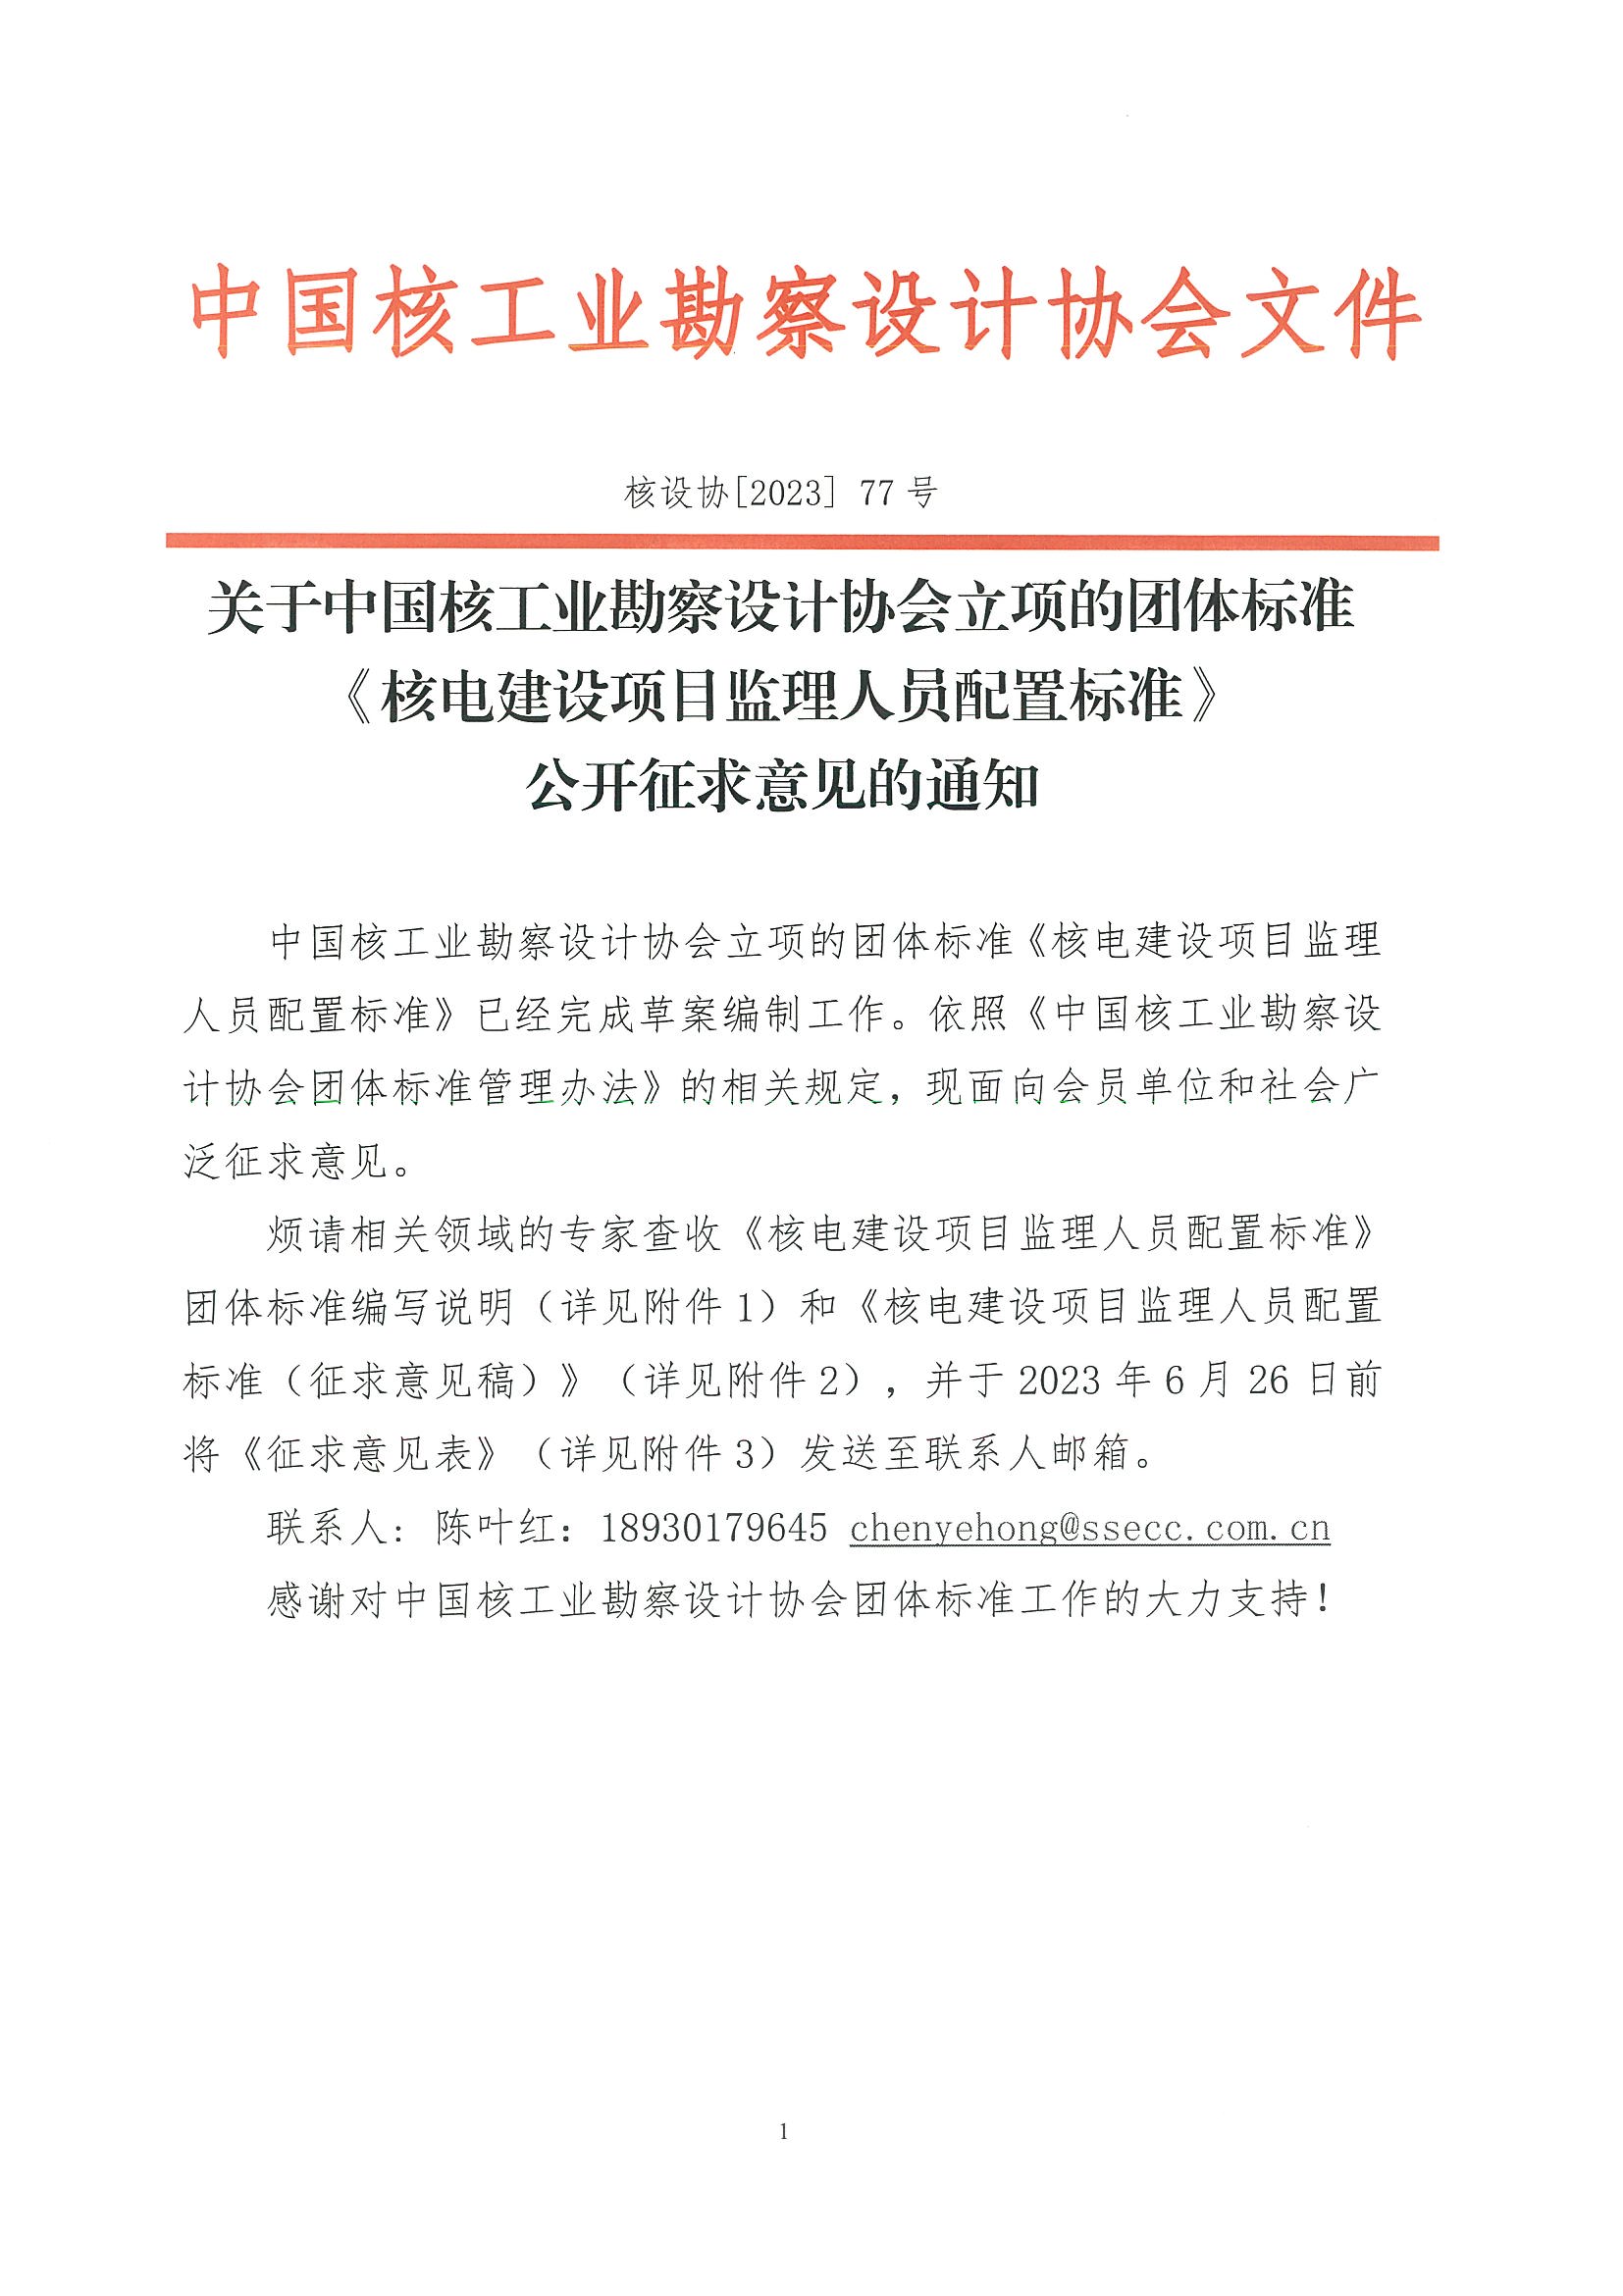 核设协[2023]77号 关于中国核工业勘察设计协会立项的团体标准《核电建设项目监理人员配置标准》公开征求意见的通知_页面_1.jpg